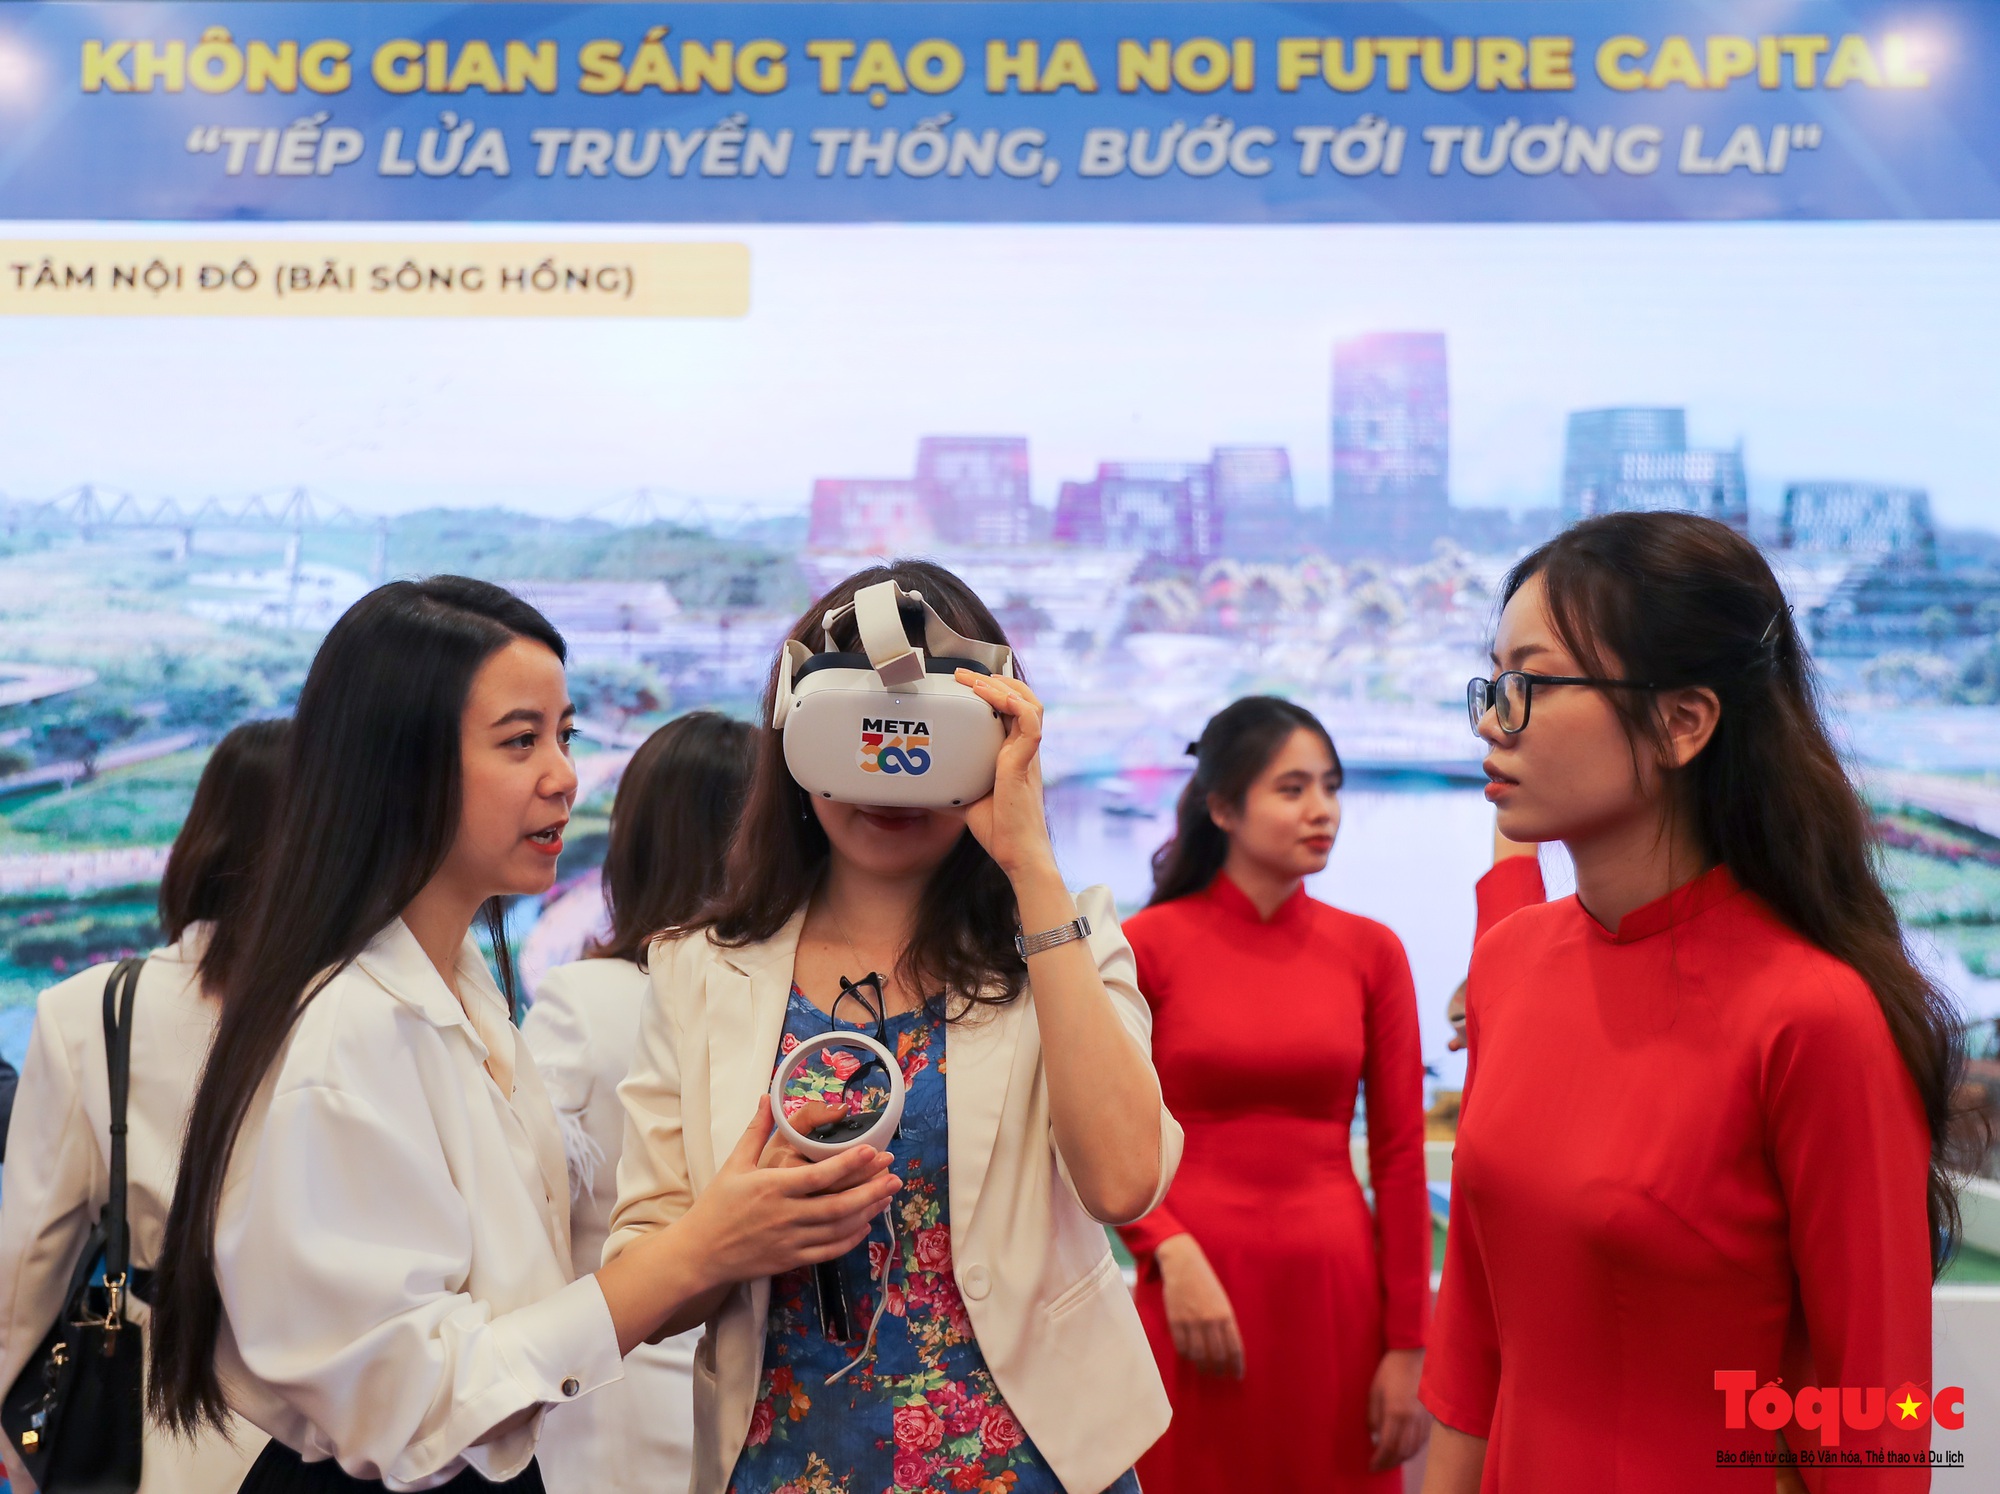 Trải nghiệm thú vị tại không gian sáng tạo “Hanoi Future Capital” - Ảnh 14.